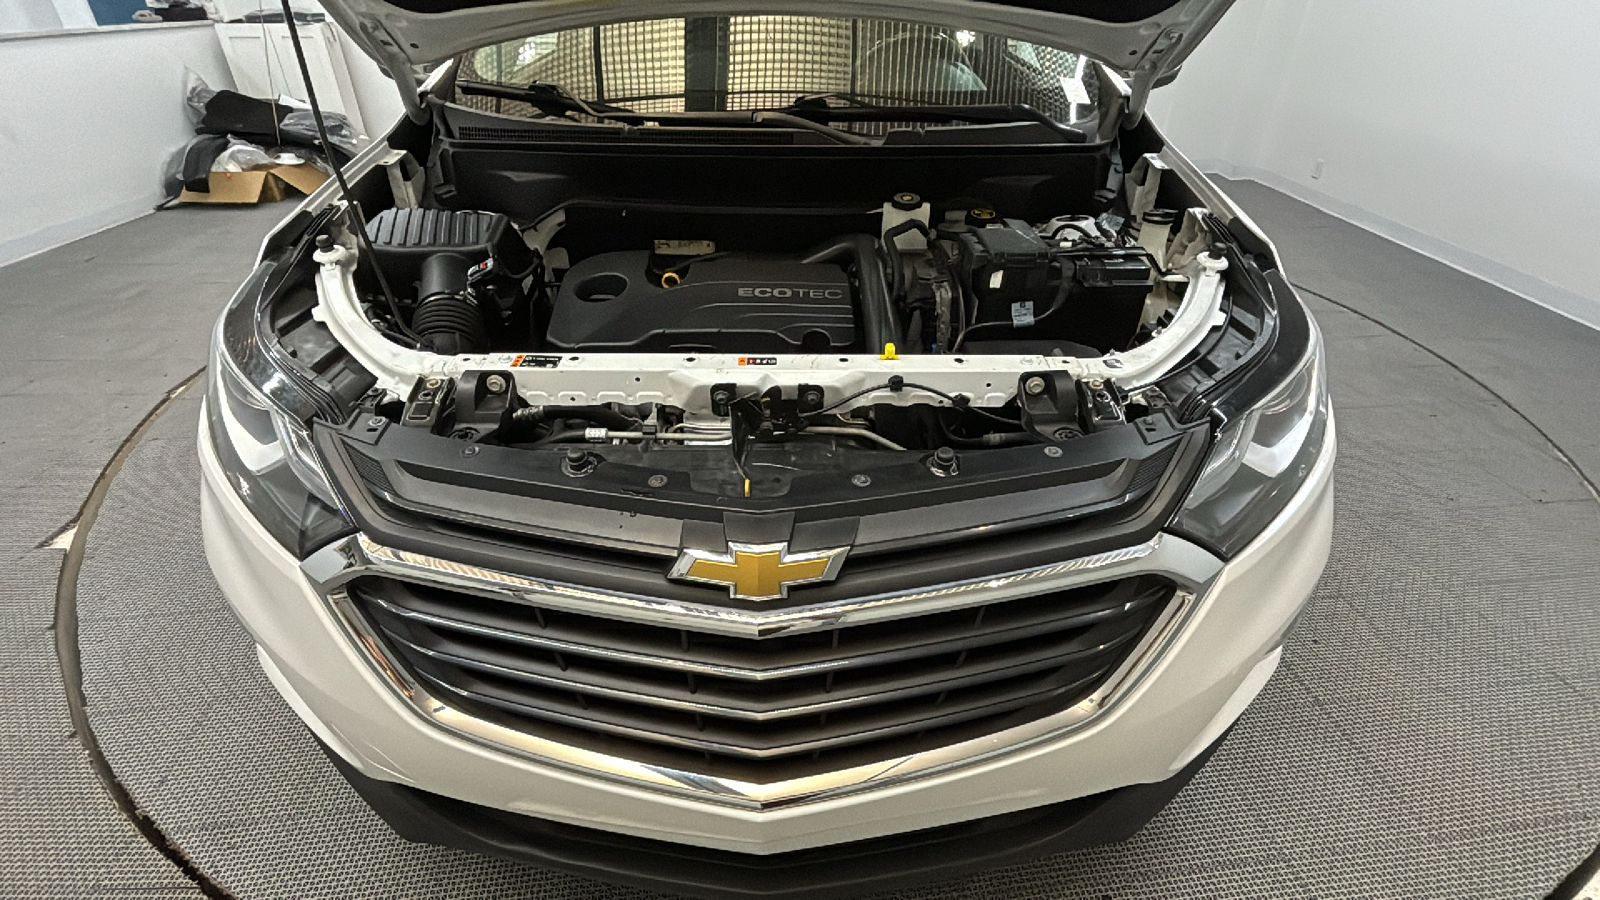 2019 Chevrolet Equinox LT 9